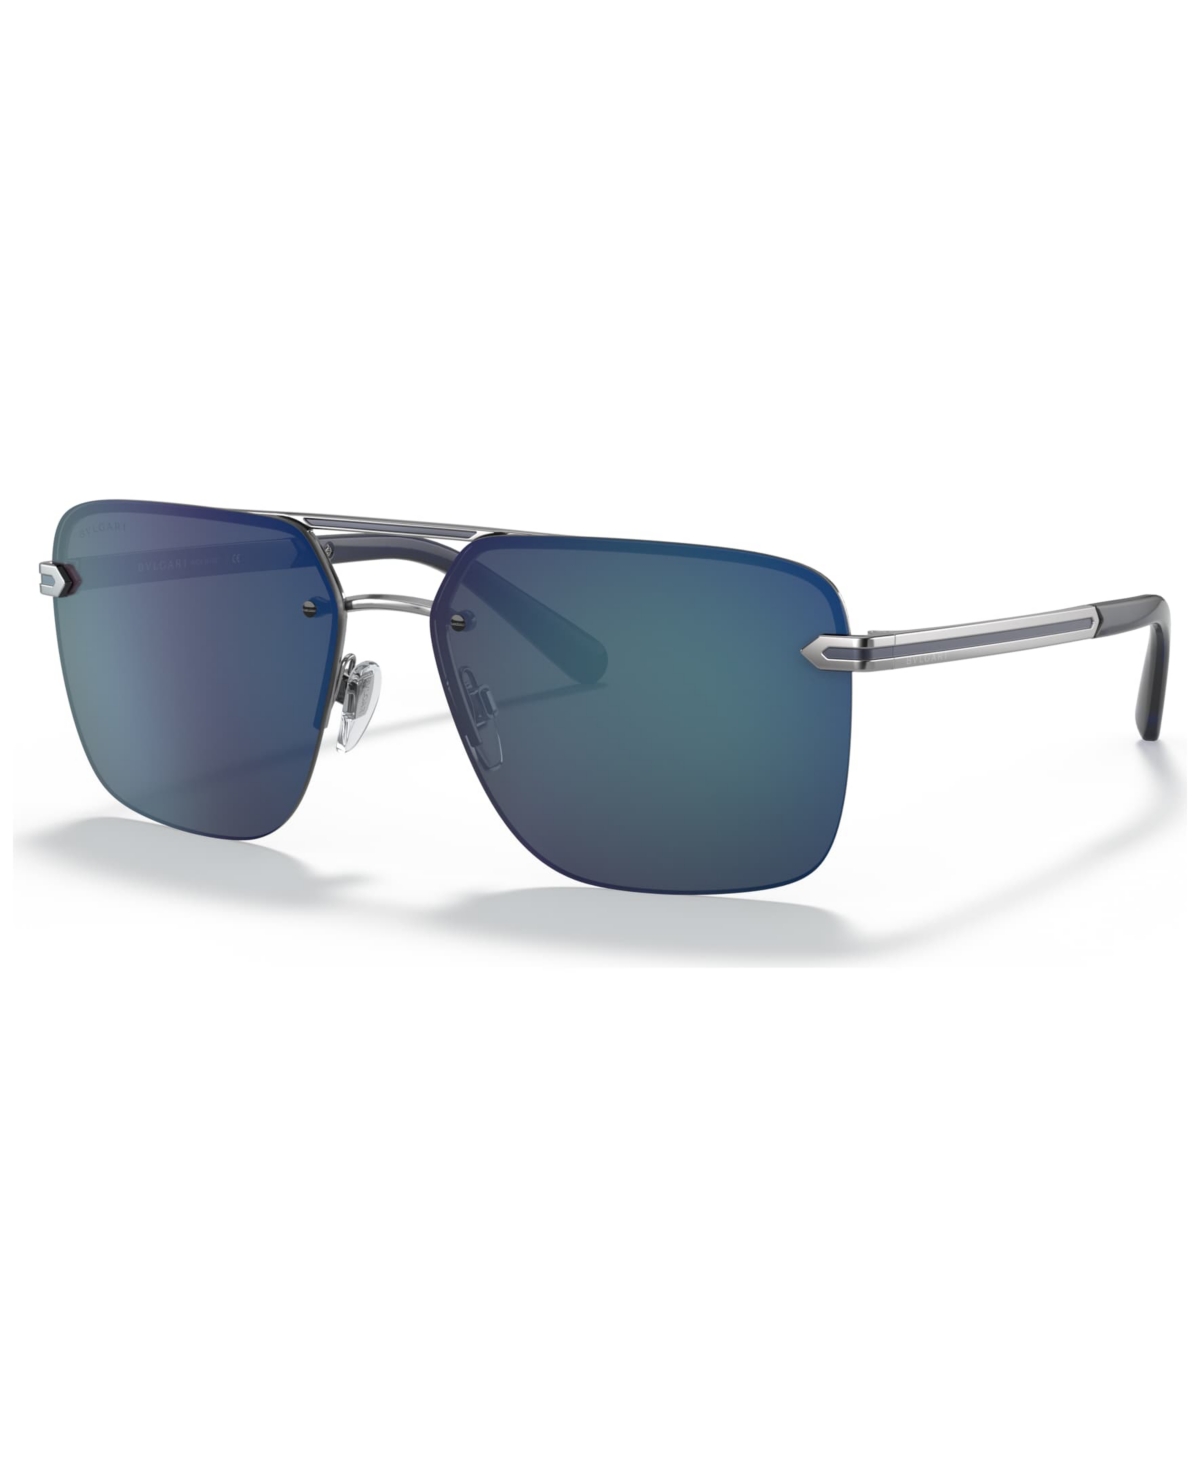 Bvlgari Men's Sunglasses, Bv505461-z In Gunmetal